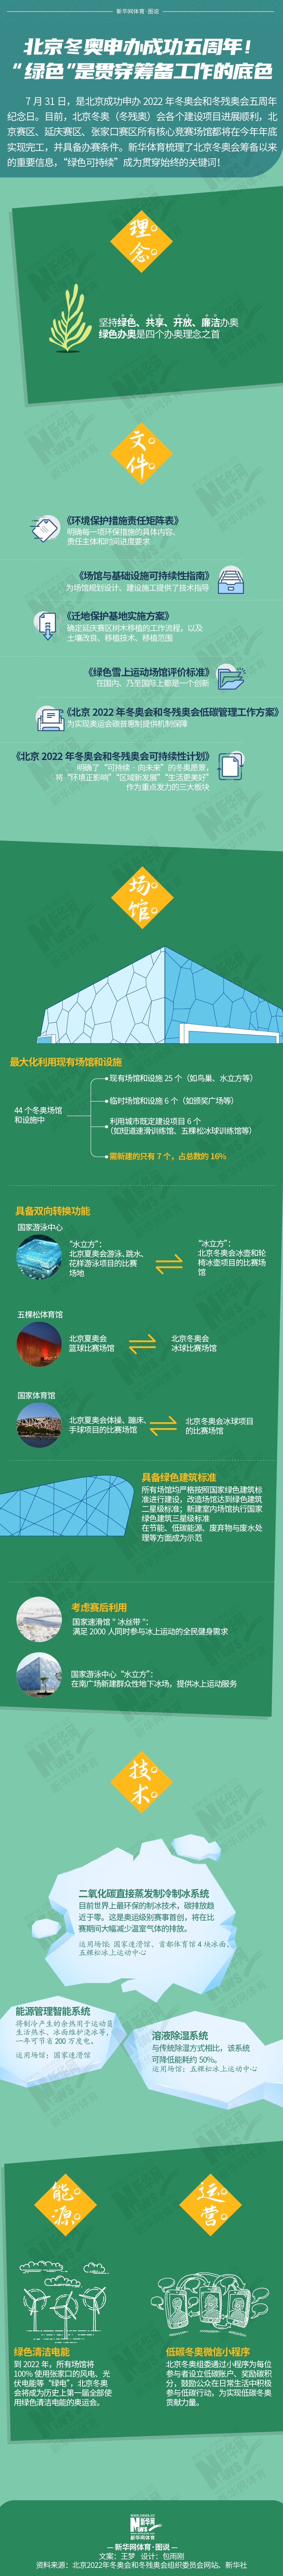 北京冬奥申办成功五周年！“绿色”是贯穿筹备工作的底色